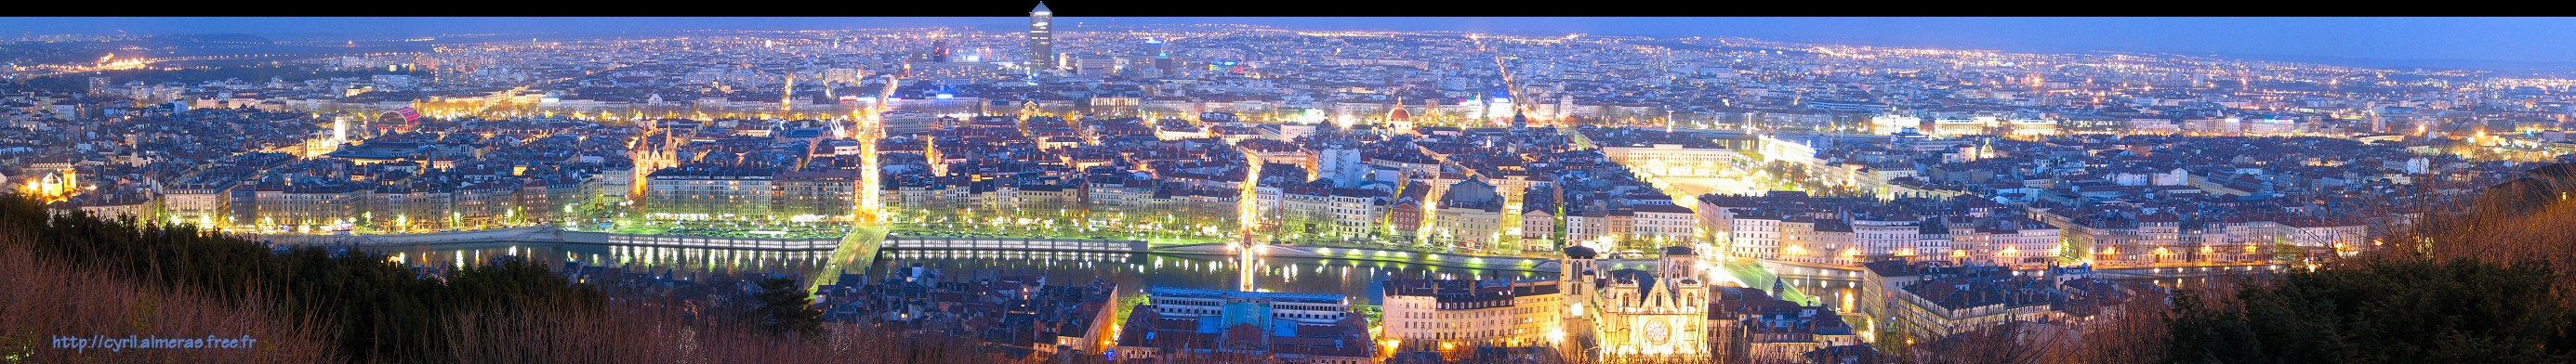 Panoramique sur Lyon de nuit